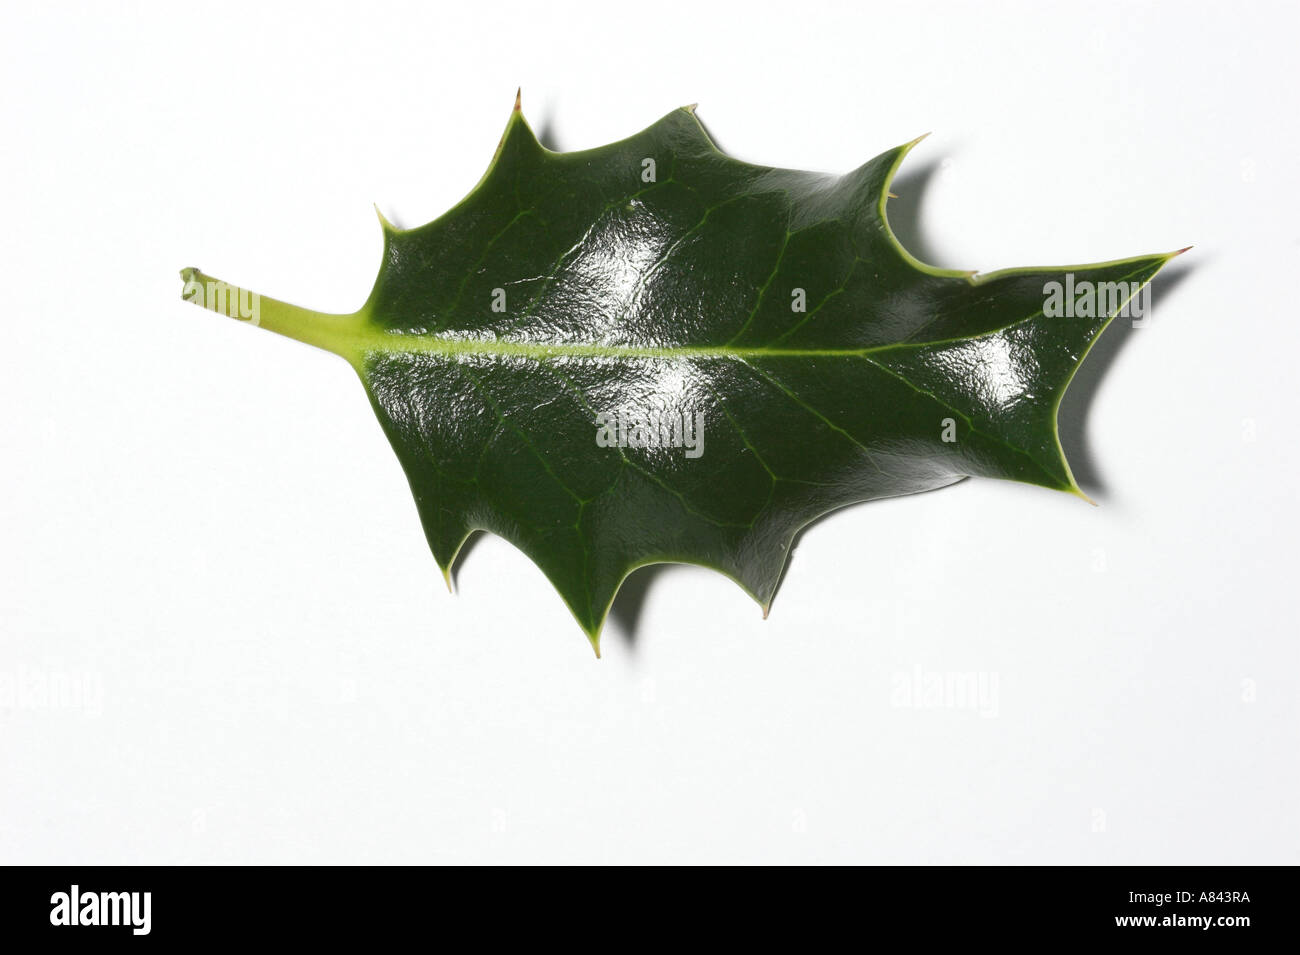 HOLLY leaf against white background Ilex aquifolium Stock Photo